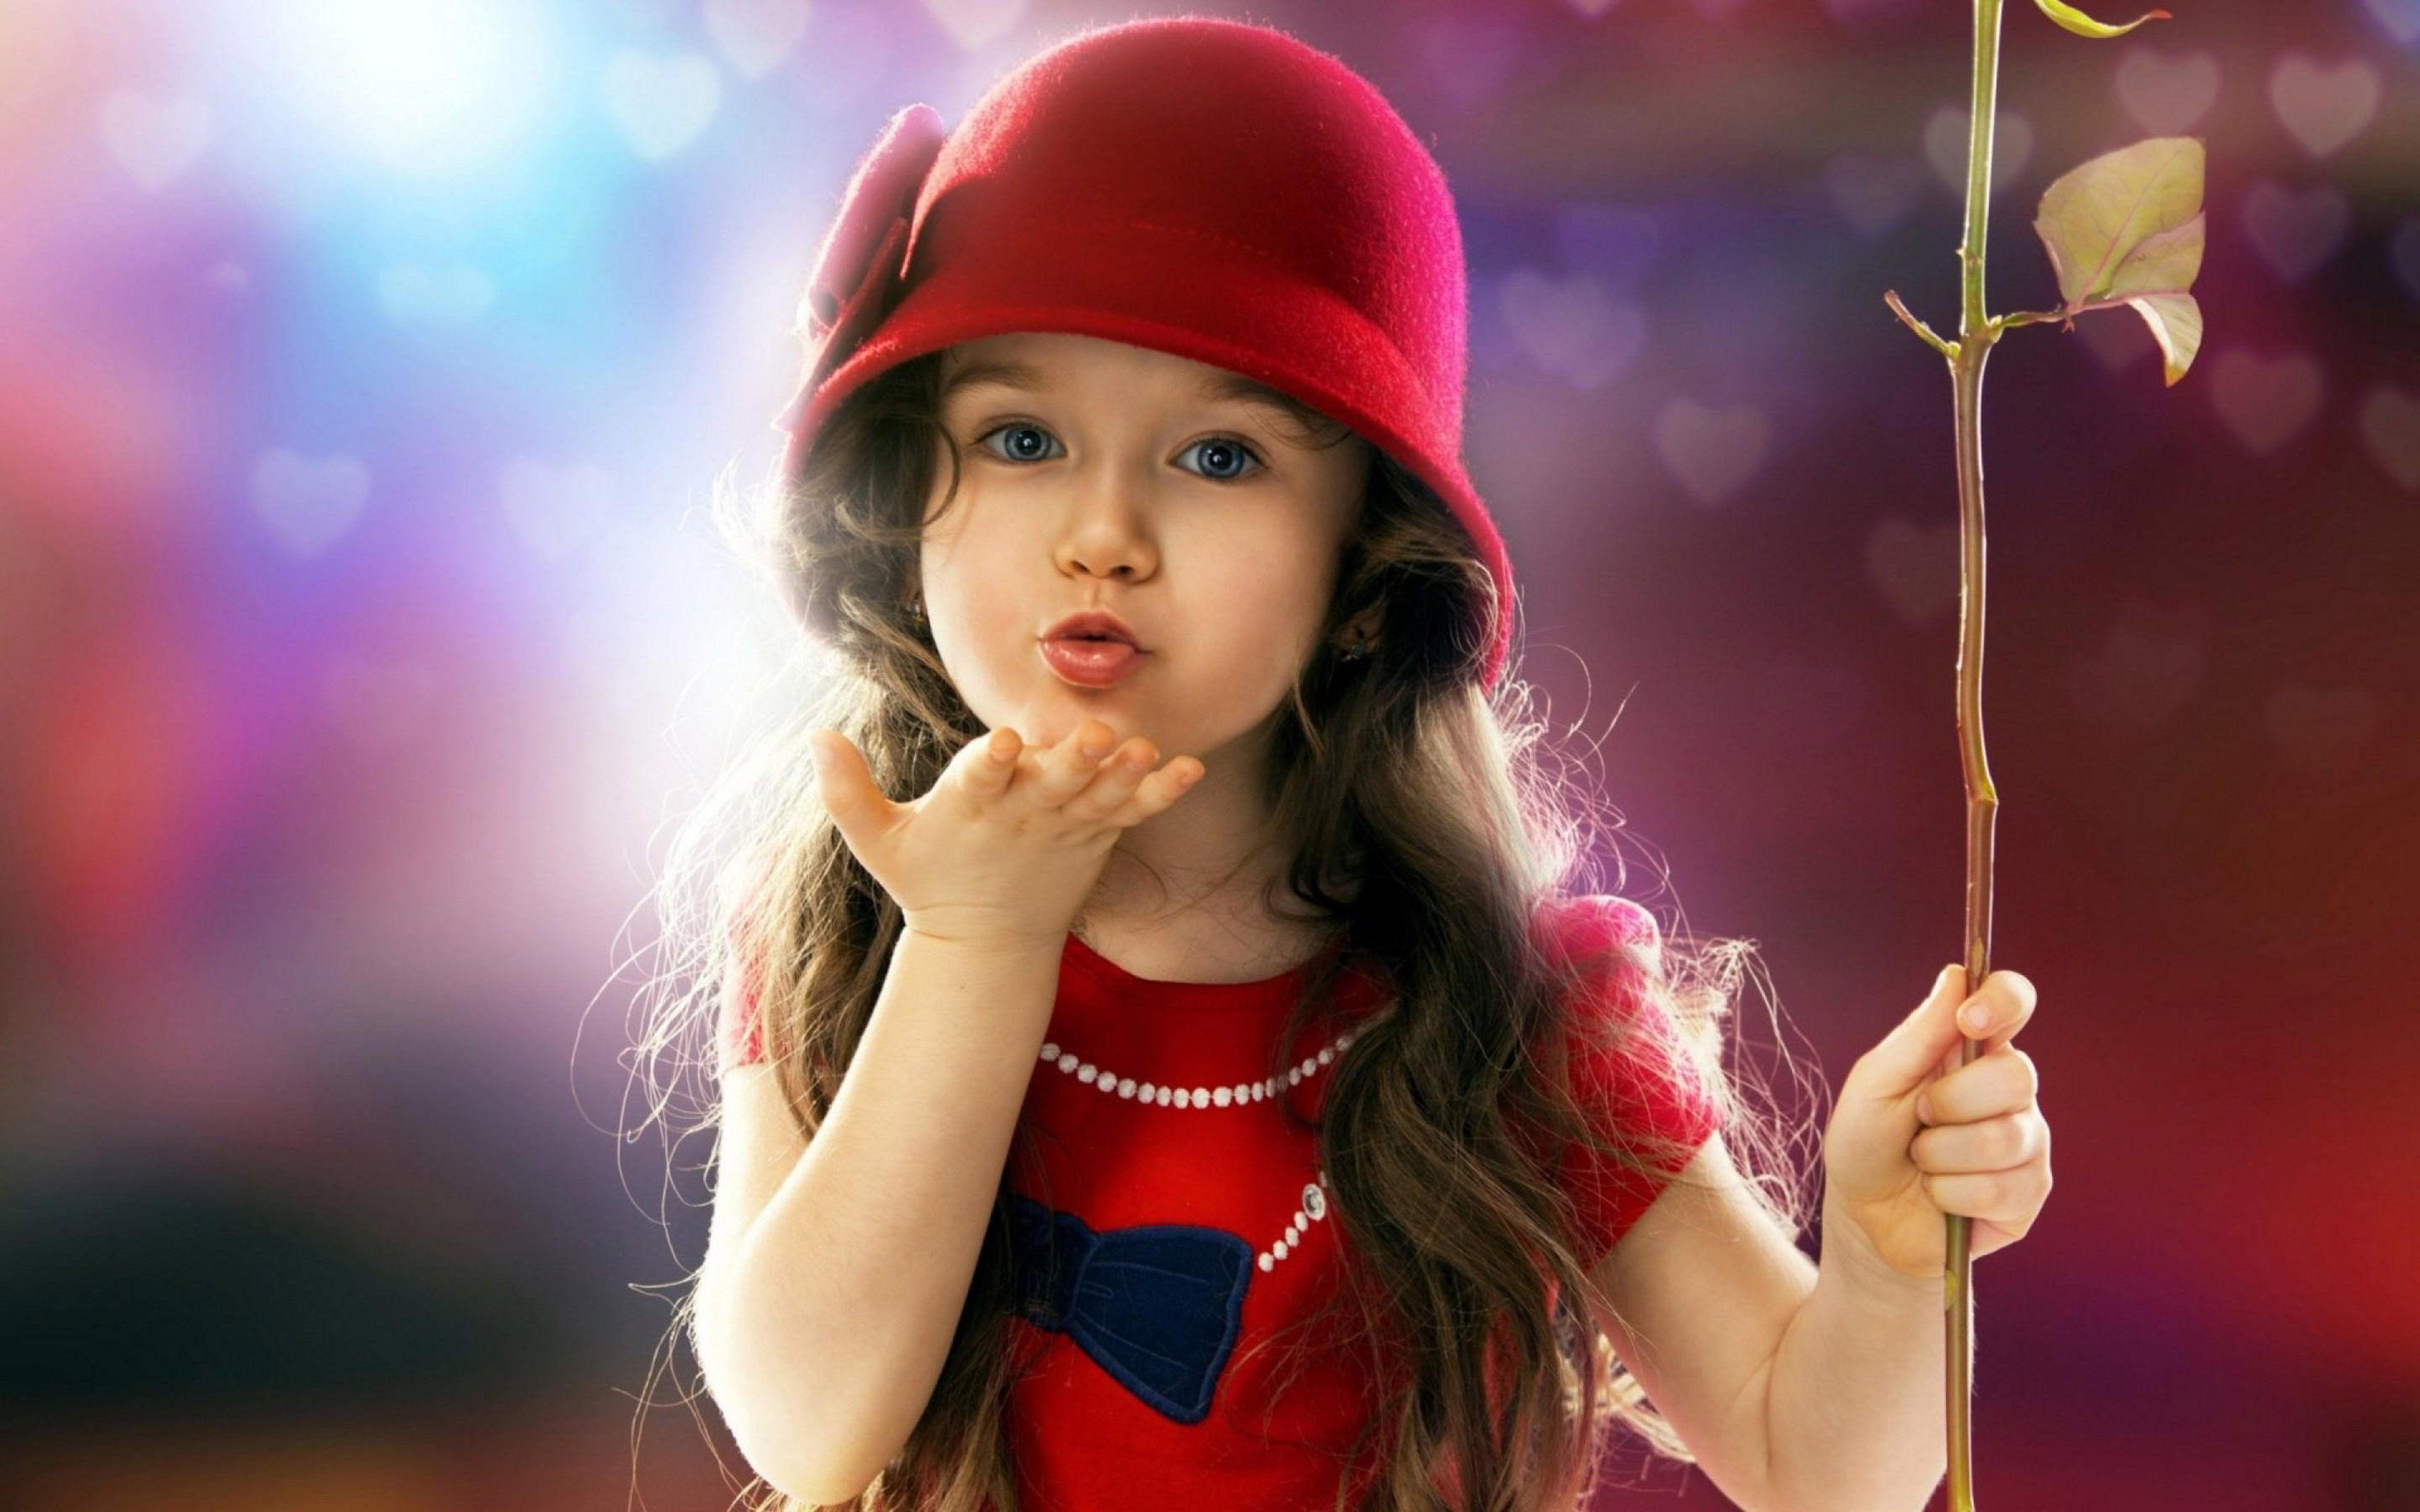 Little Girl Blowing Kiss. Cute Desktop HD Wallpaper. Cute baby